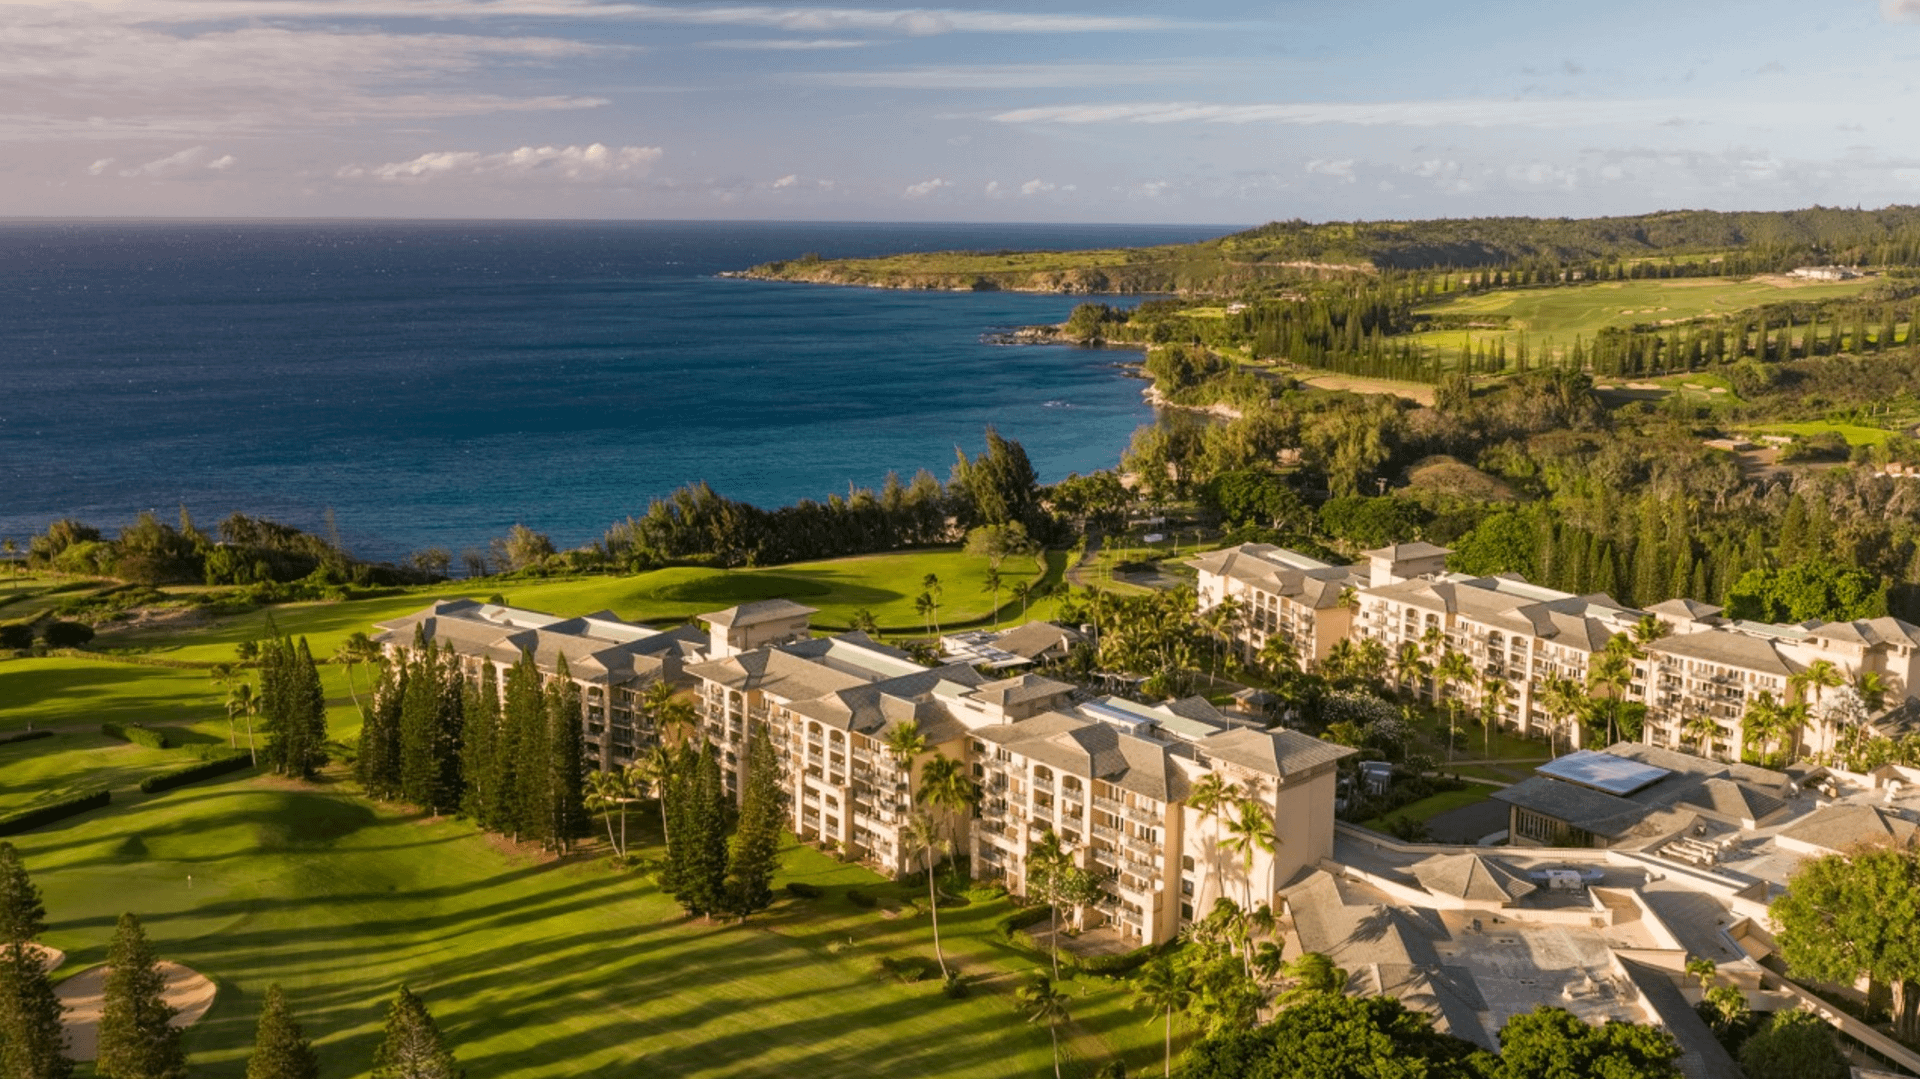 Ritz Carlton Kapalua Maui